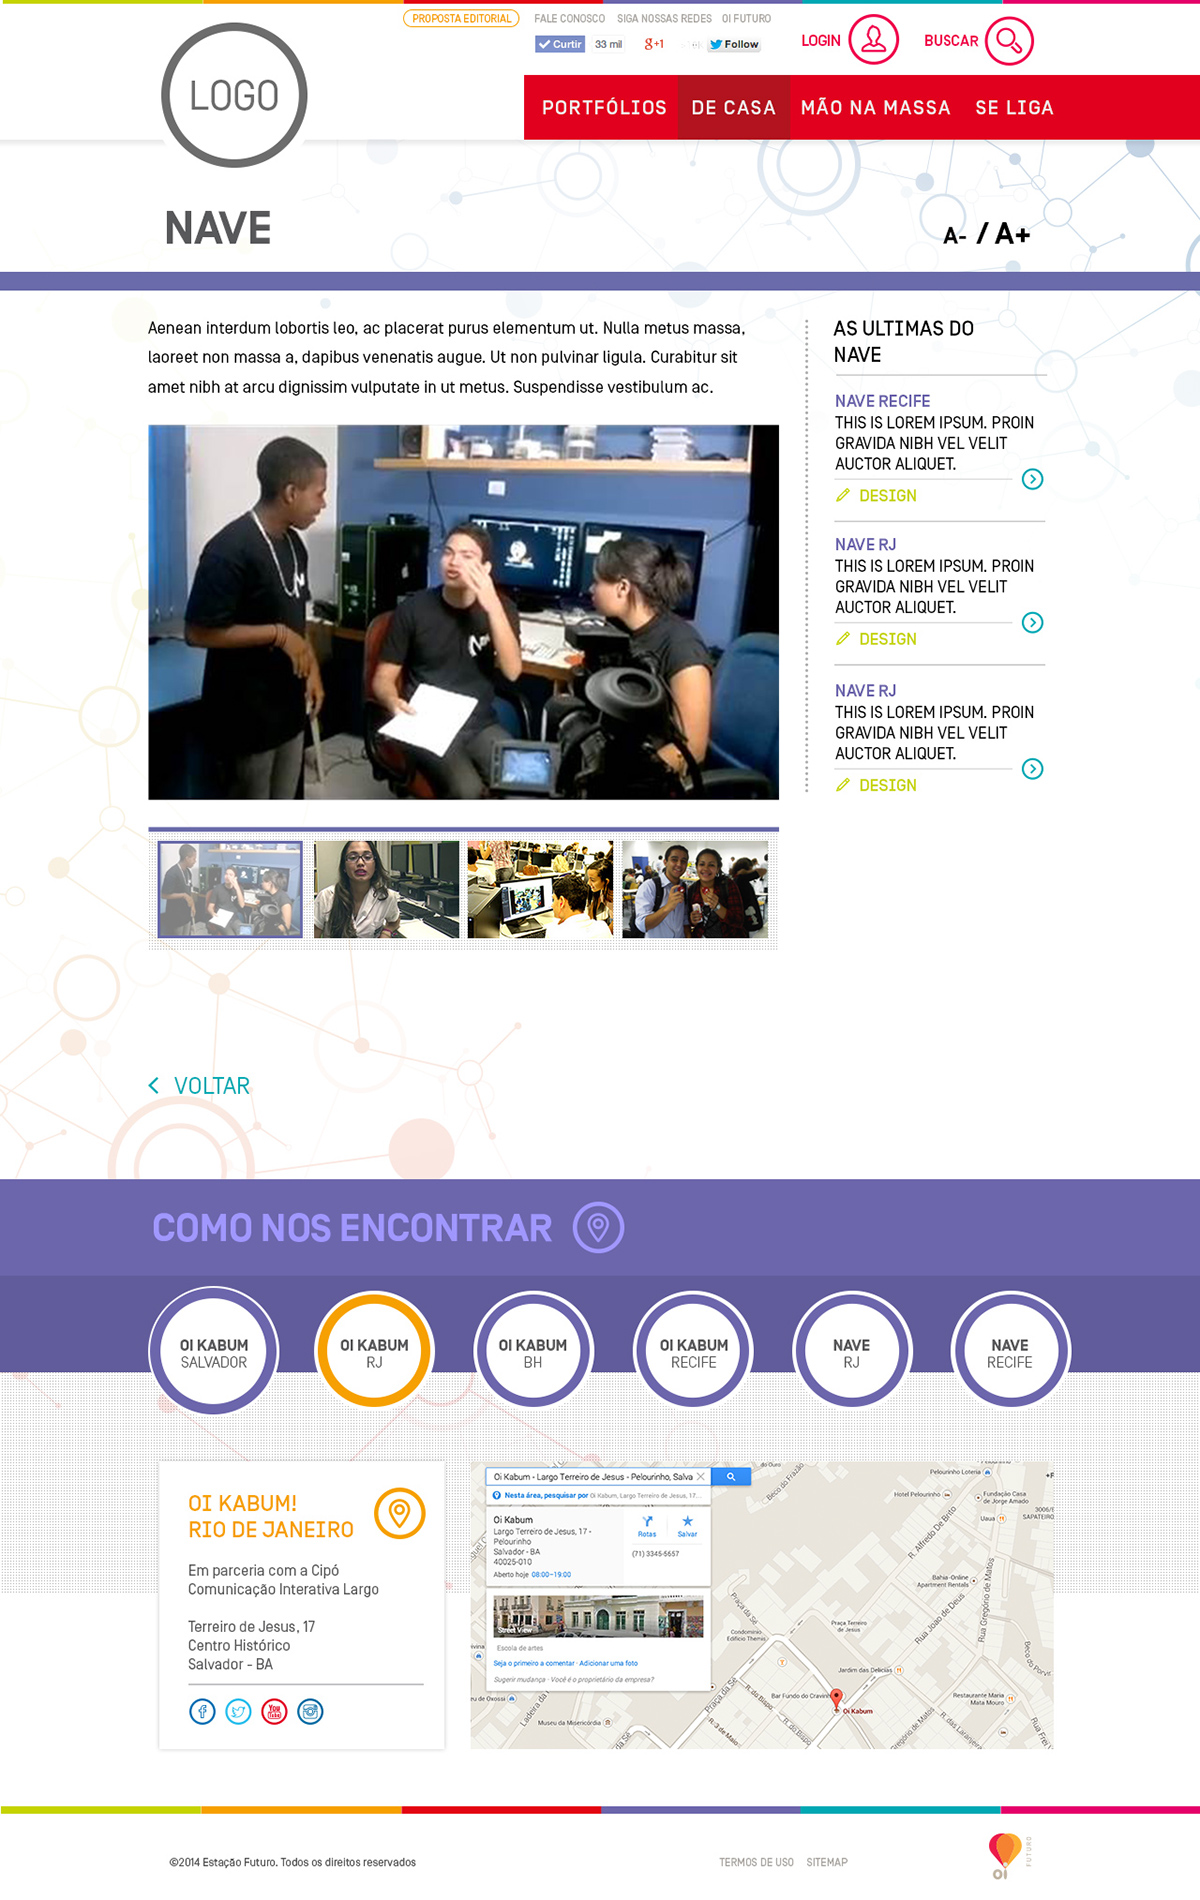 Oi futuro site portal educational